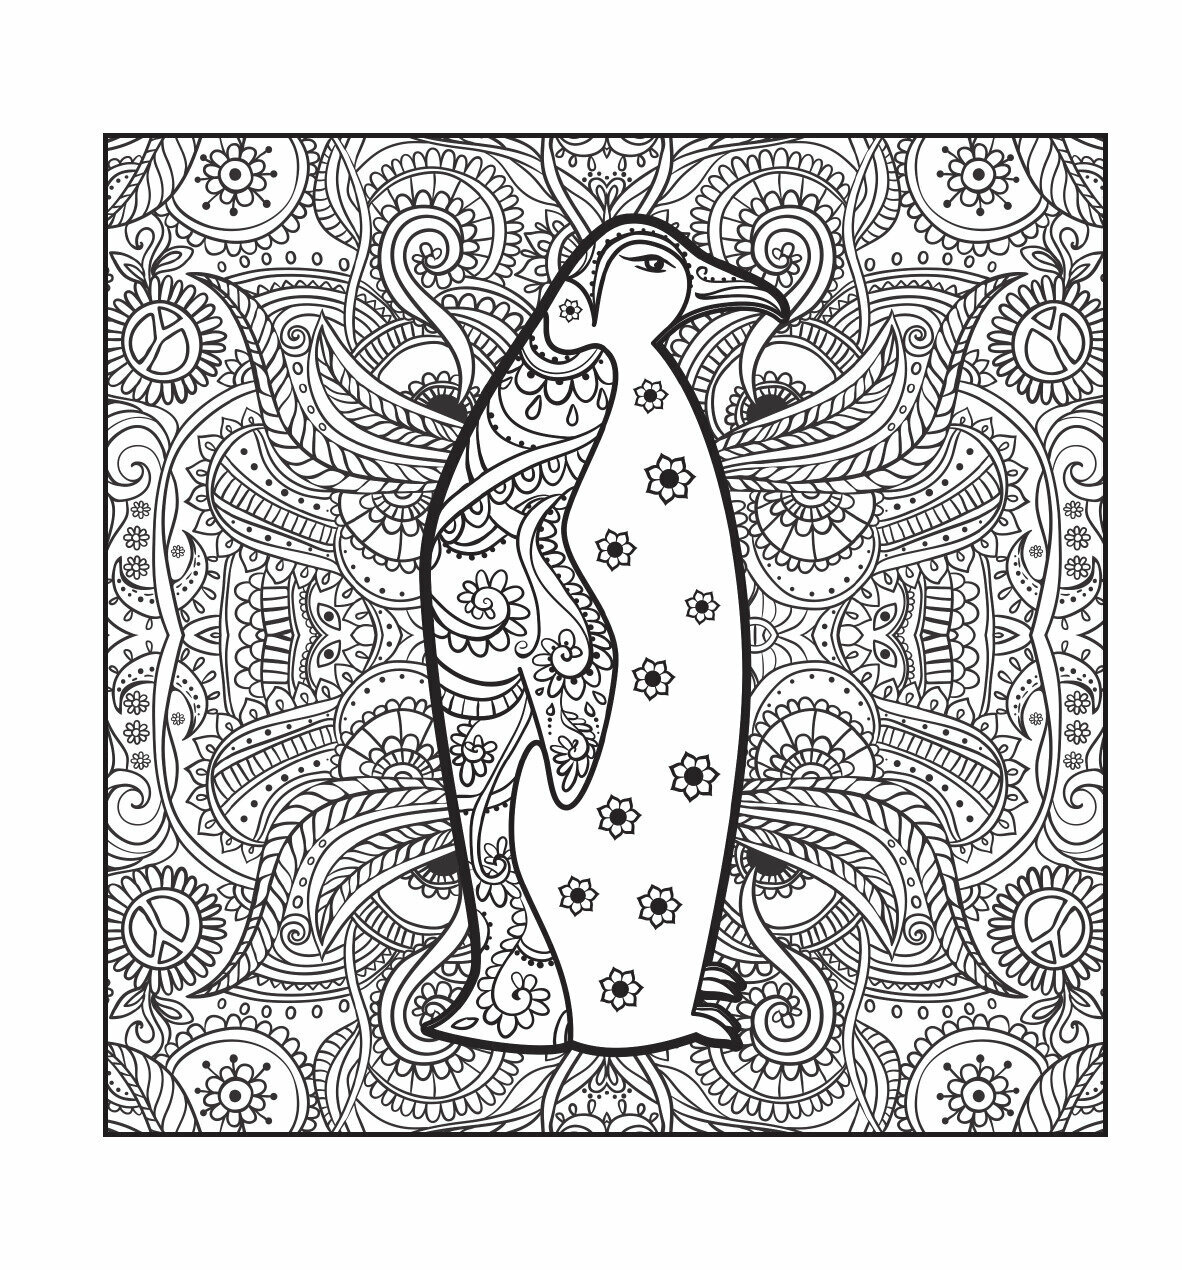 Пингвины. Рисунки для медитаций - фото №7